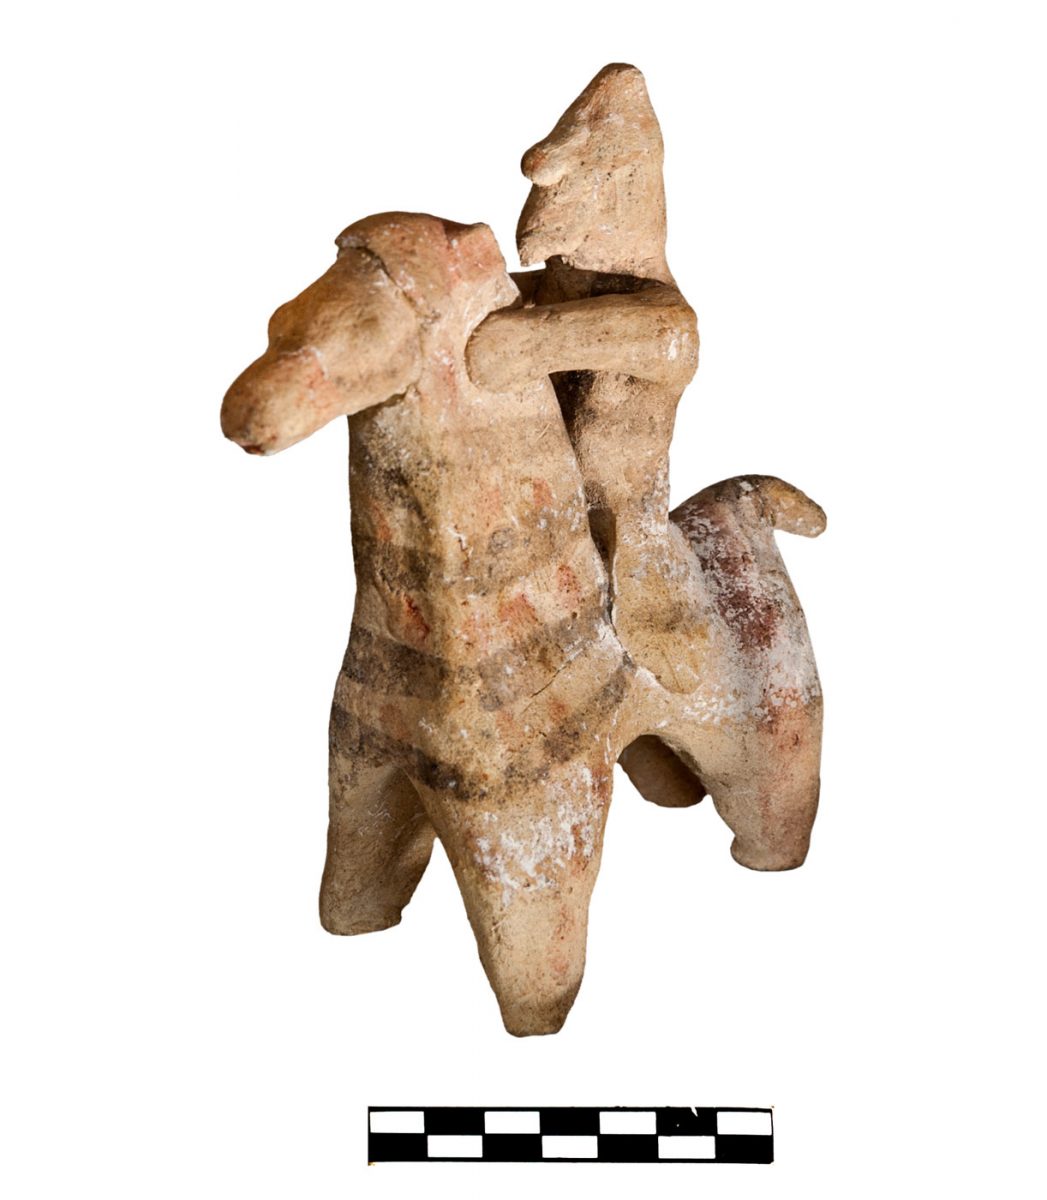 Πήλινο ειδώλιο αλόγου με αναβάτη-πολεμιστή που χρονολογείται στην Κυπρο-Αρχαϊκή περίοδο (φωτ. Τμήμα Αρχαιοτήτων Κύπρου).